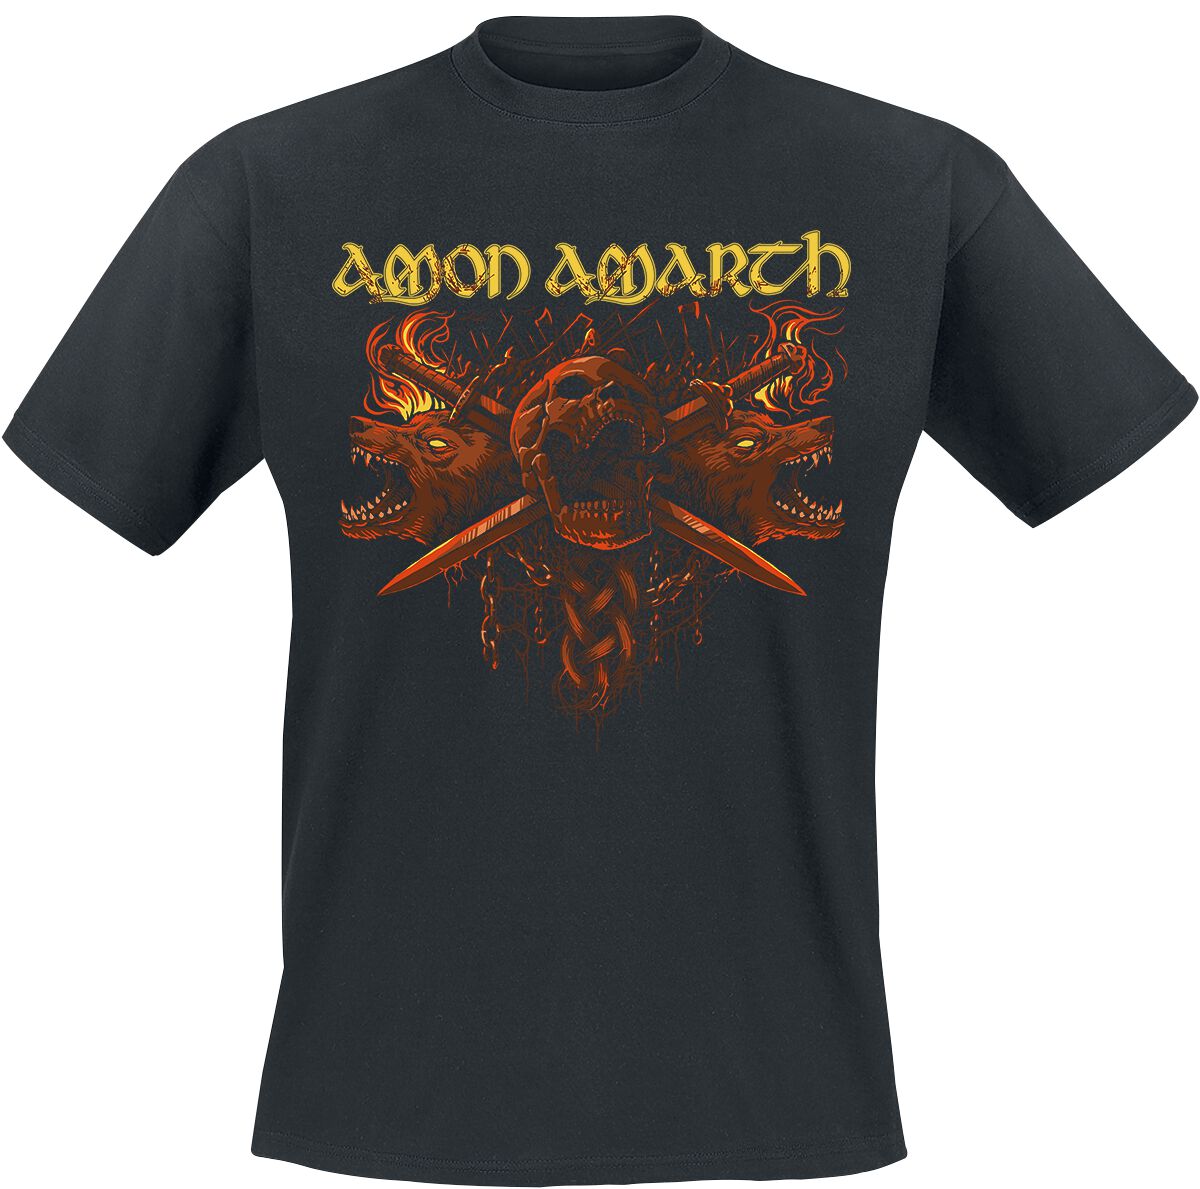 Amon Amarth T-Shirt - Masters Of War - M bis XL - für Männer - Größe XL - schwarz  - Lizenziertes Merchandise!